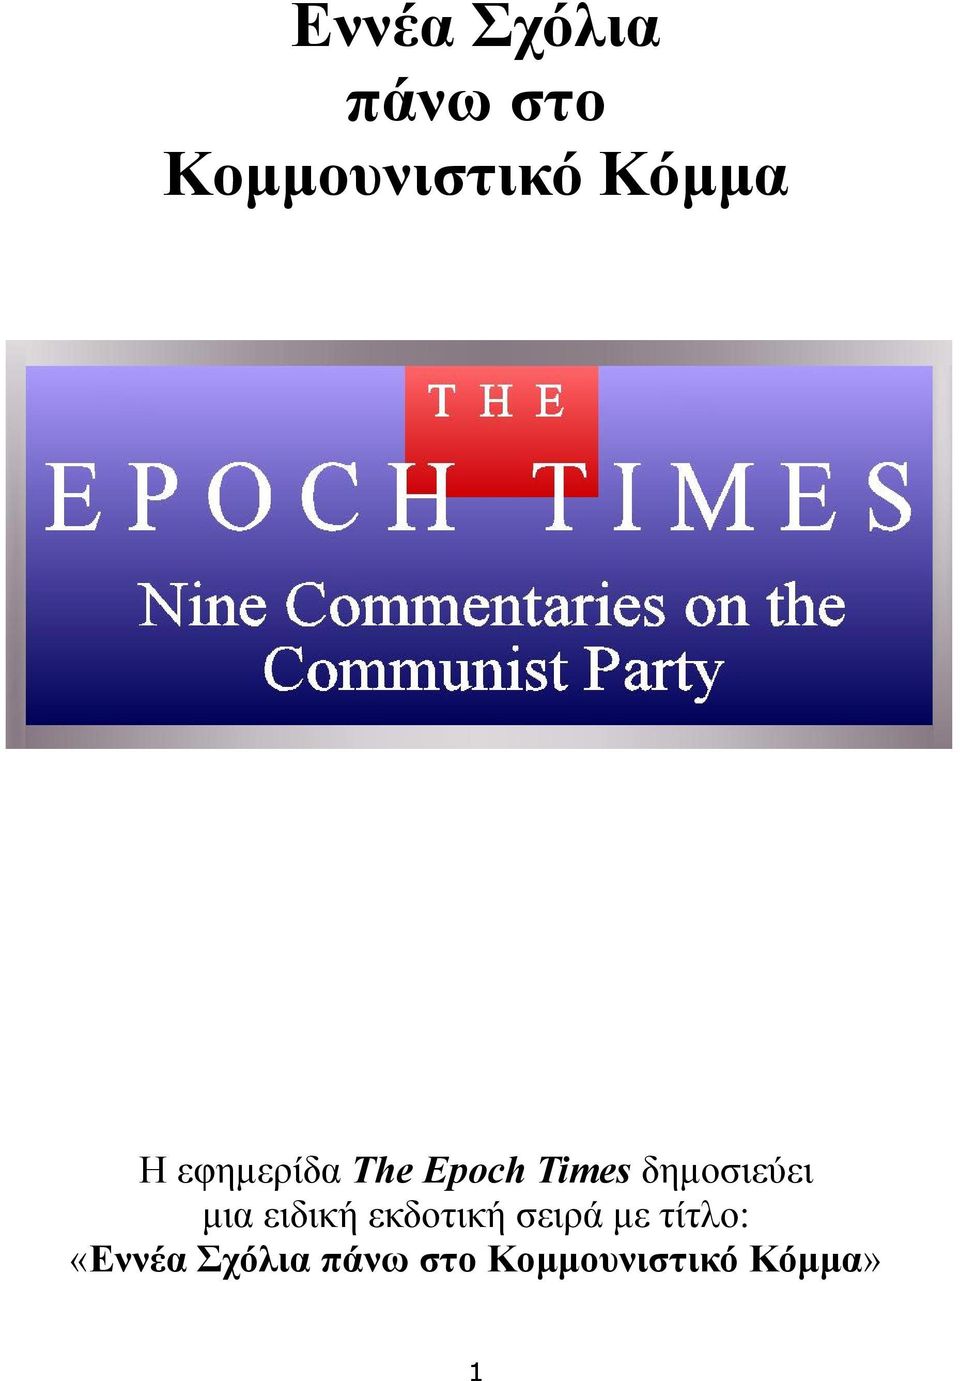 Εννέα Σχόλια πάνω στο Κομμουνιστικό Κόμμα - PDF Free Download